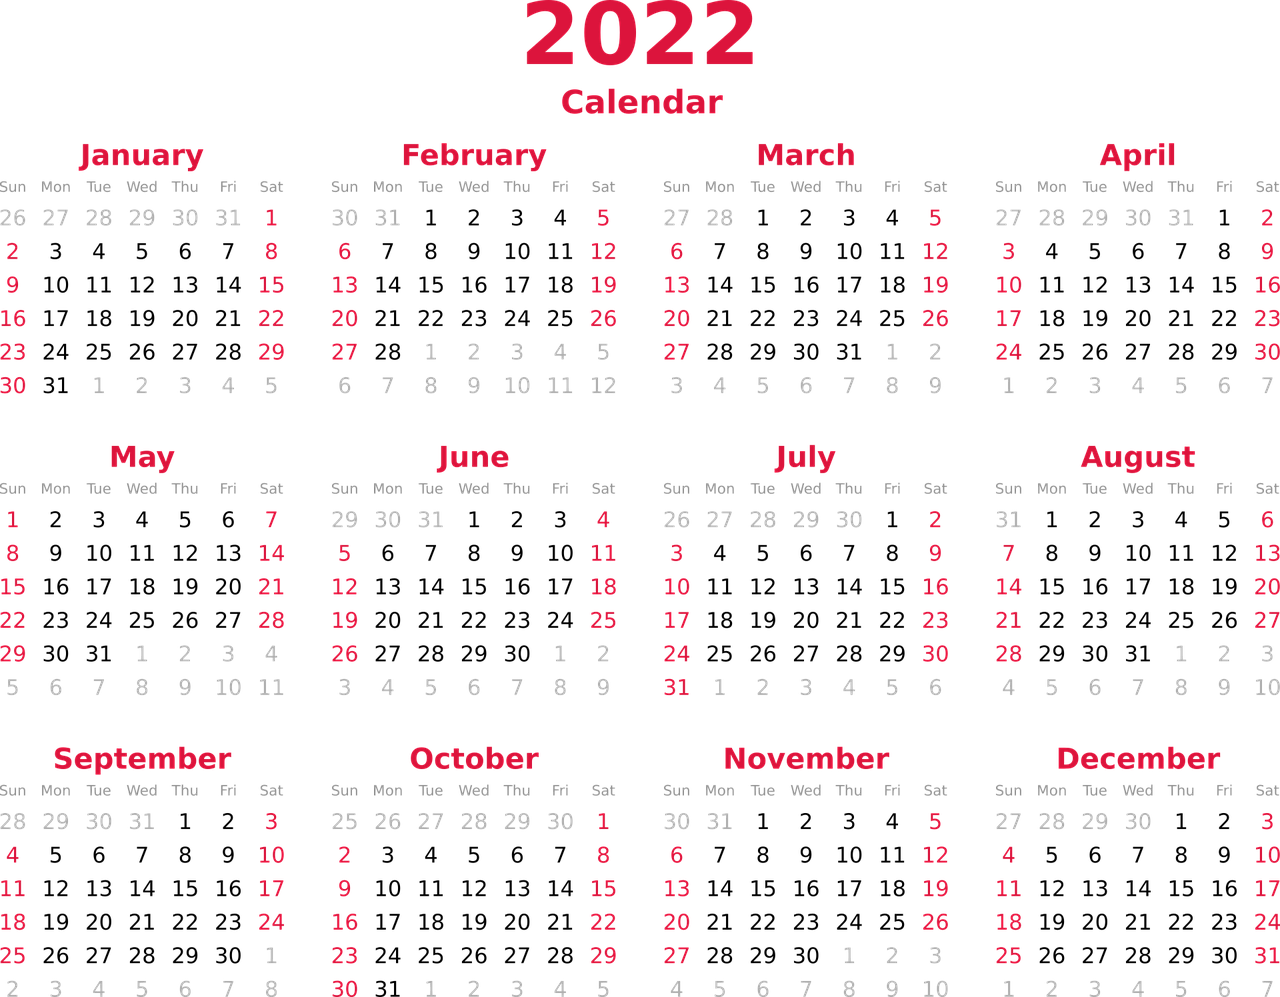 26 Mei memperingati hari apa, tanggal merah bulan Mei 2022, tanggal 26 Mei 2022 hari apa, dan kalender 2022 lengkap dengan tanggal merah.